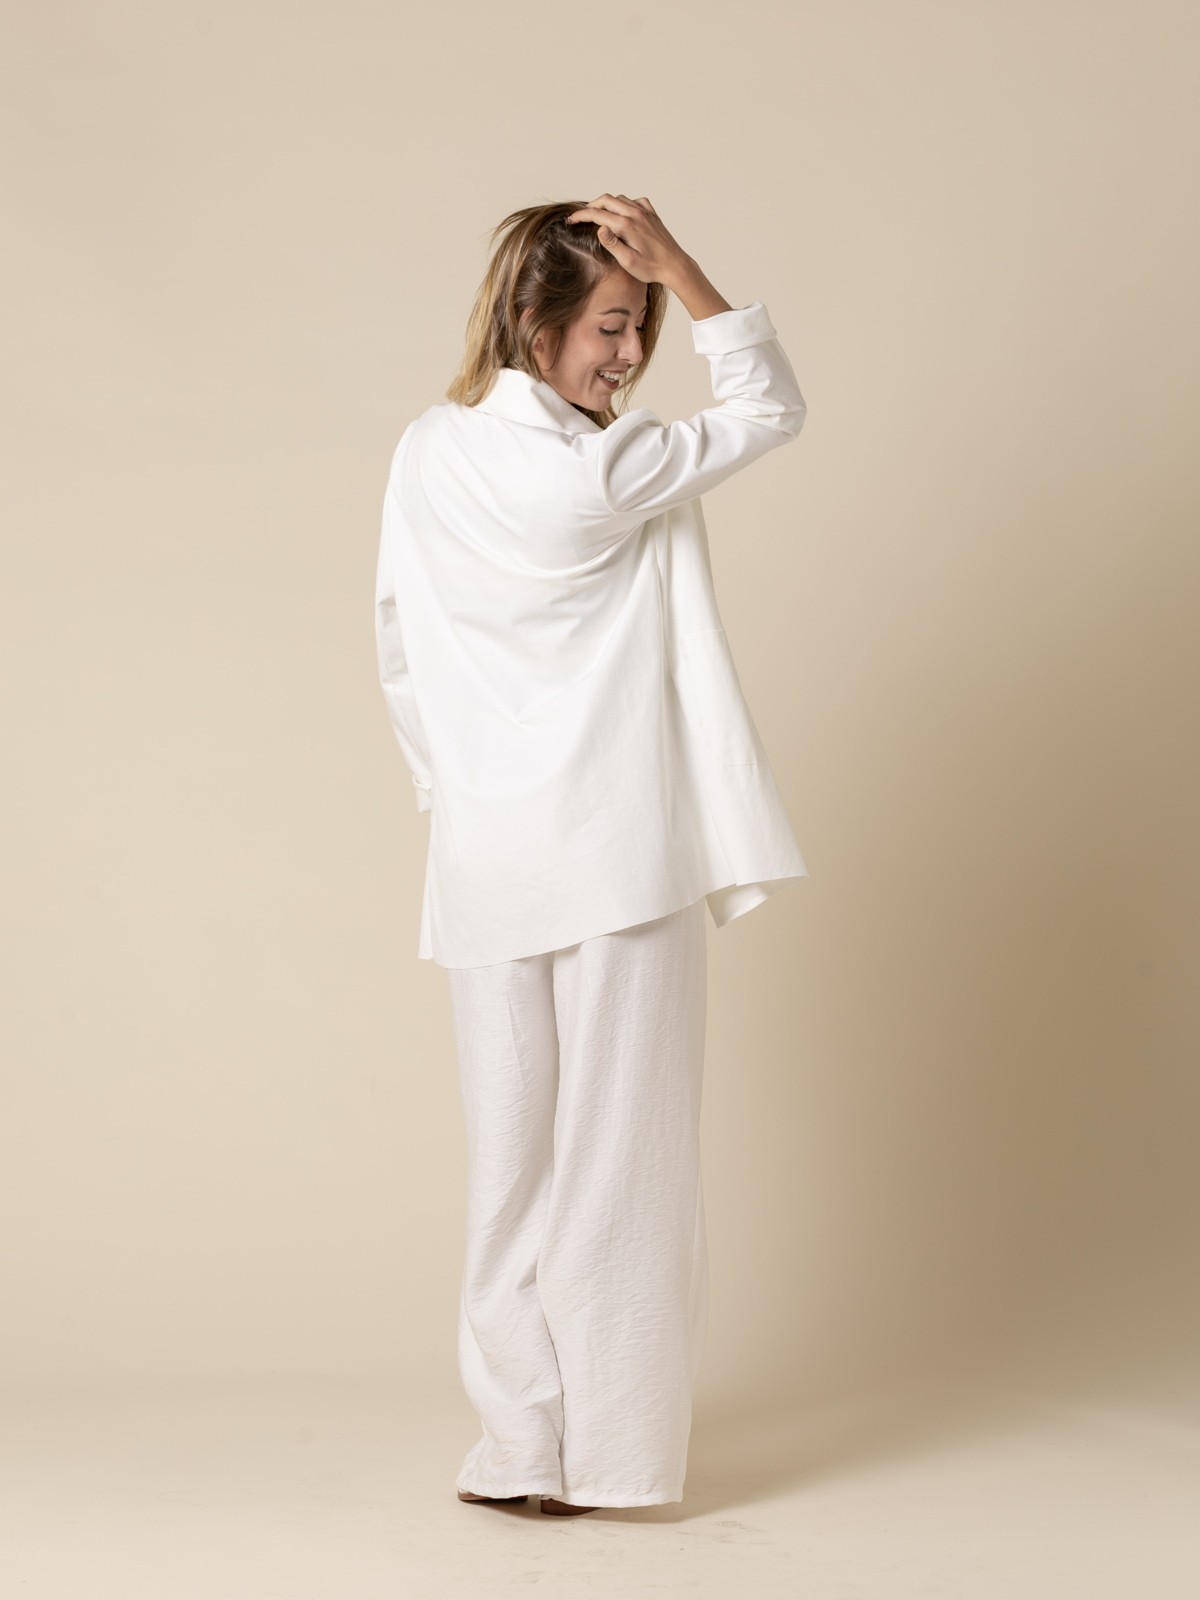 Blasier comfy oversize color Blanco